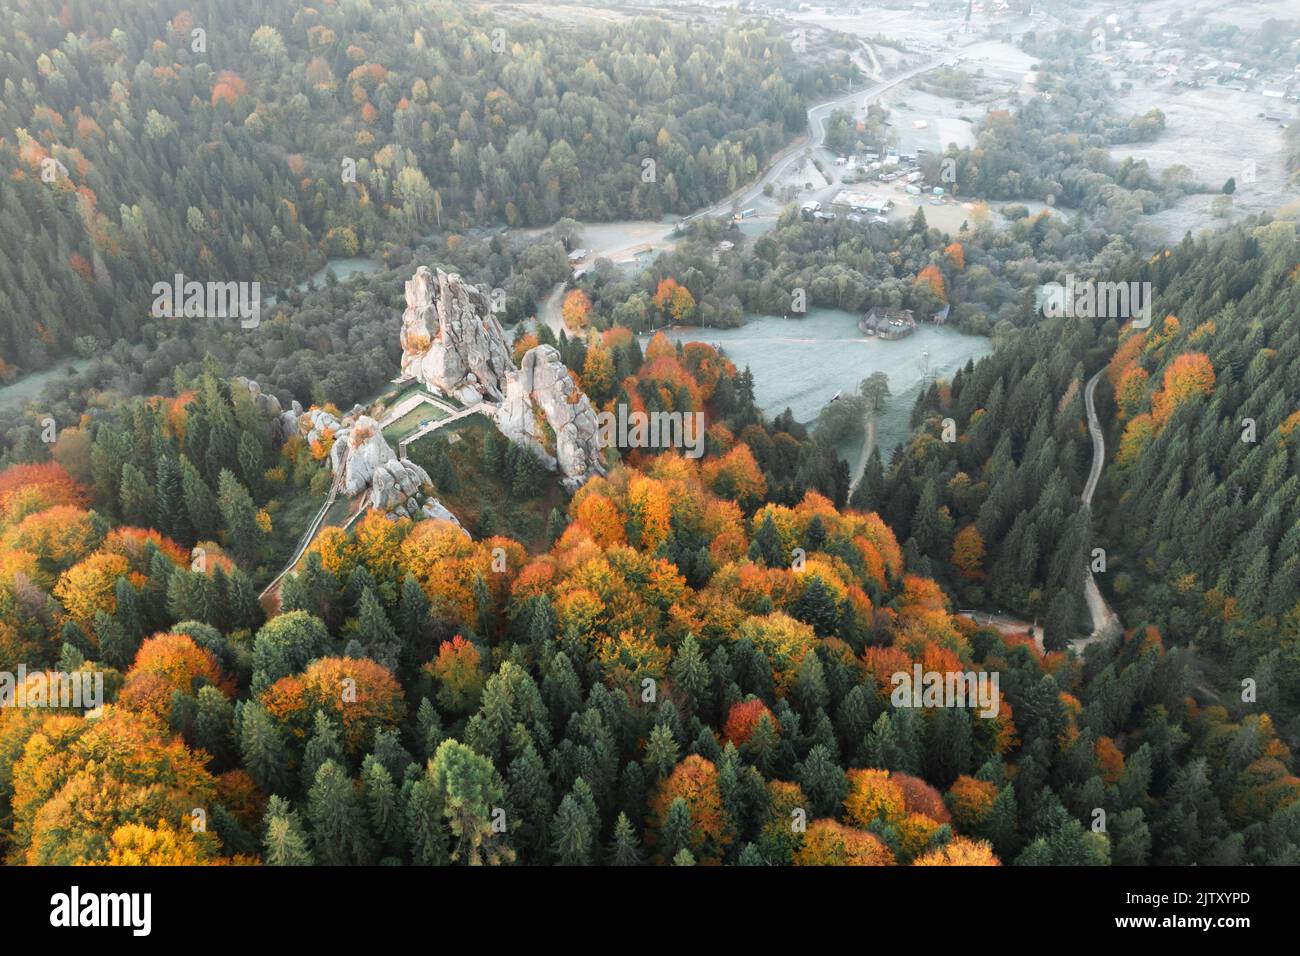 Vista aérea desde el drone a la fortaleza de Tustan - monumento arqueológico y natural de importancia nacional en la aldea de Urych en otoño, Ucrania. Fotografía de paisajes Foto de stock